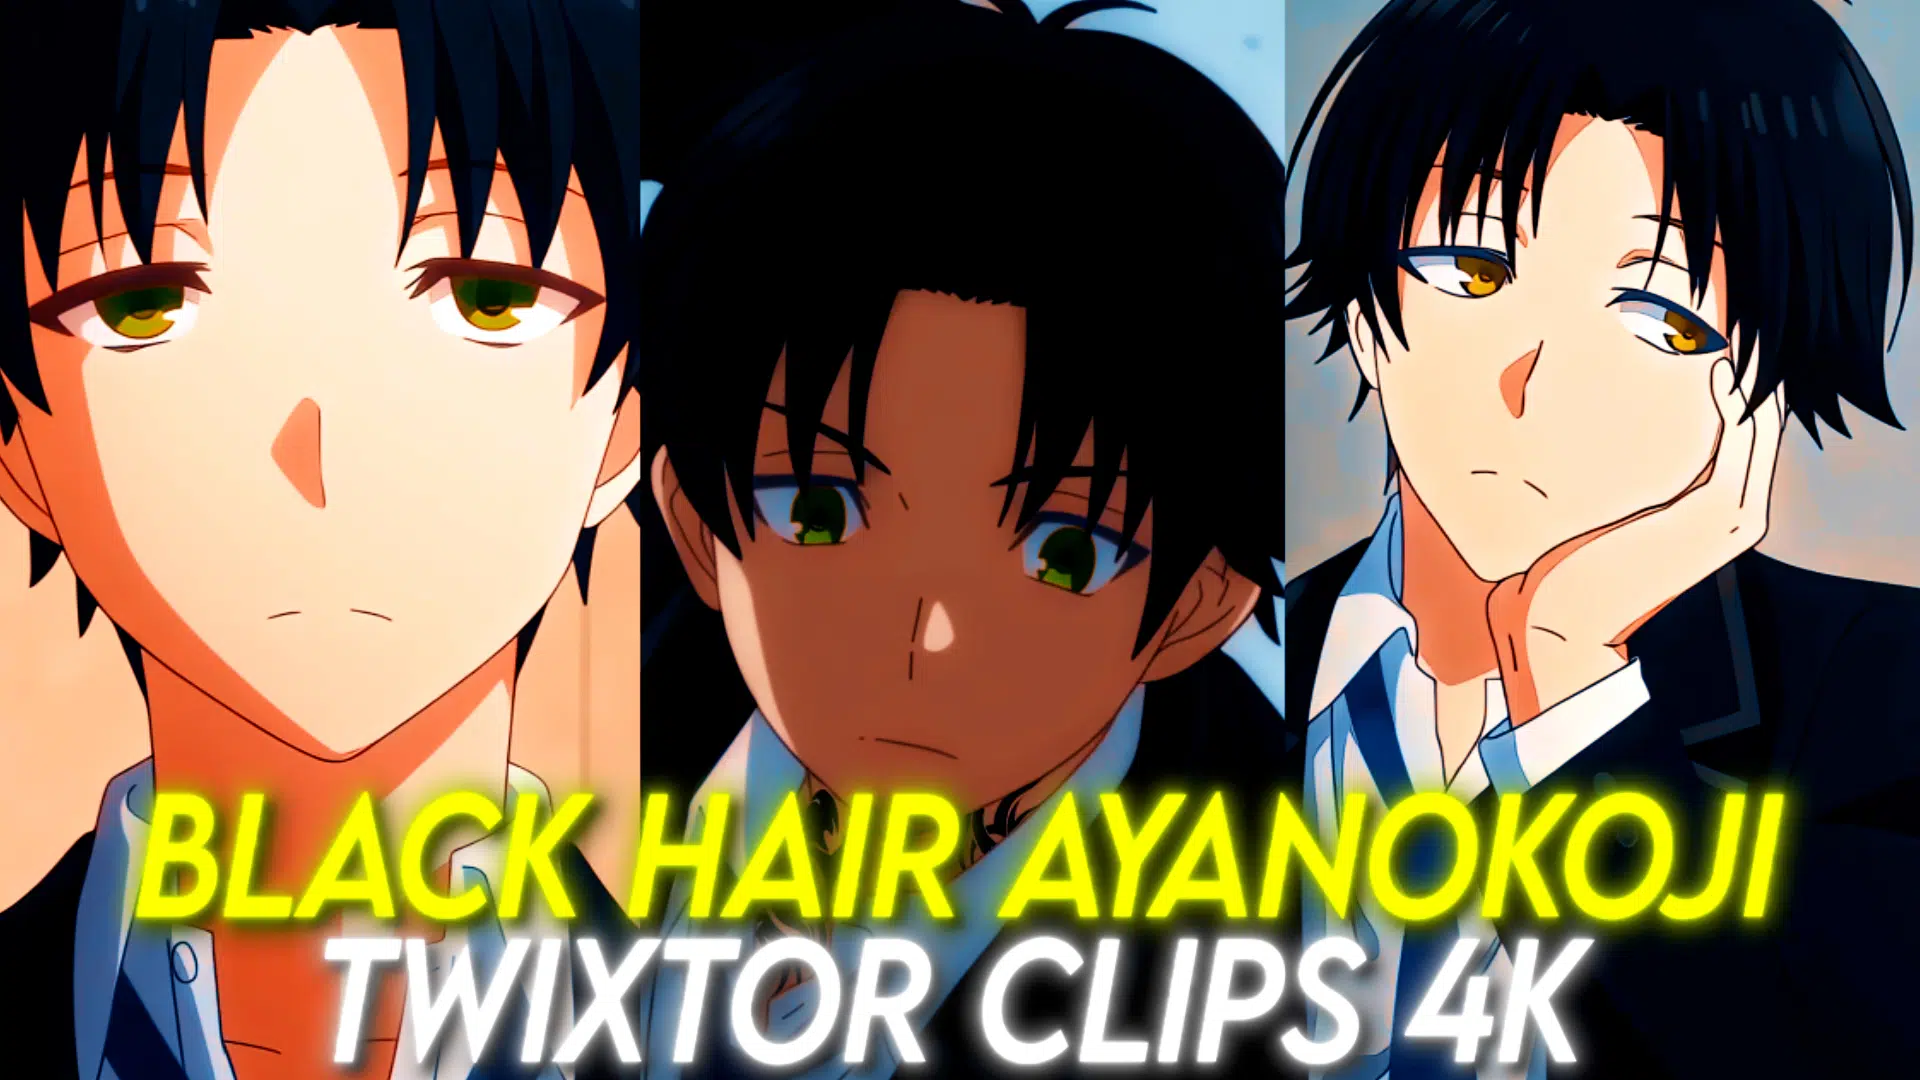 Ayanokoji Kiyotaka 4k Twixtor Clips (Classroom of the elite) 